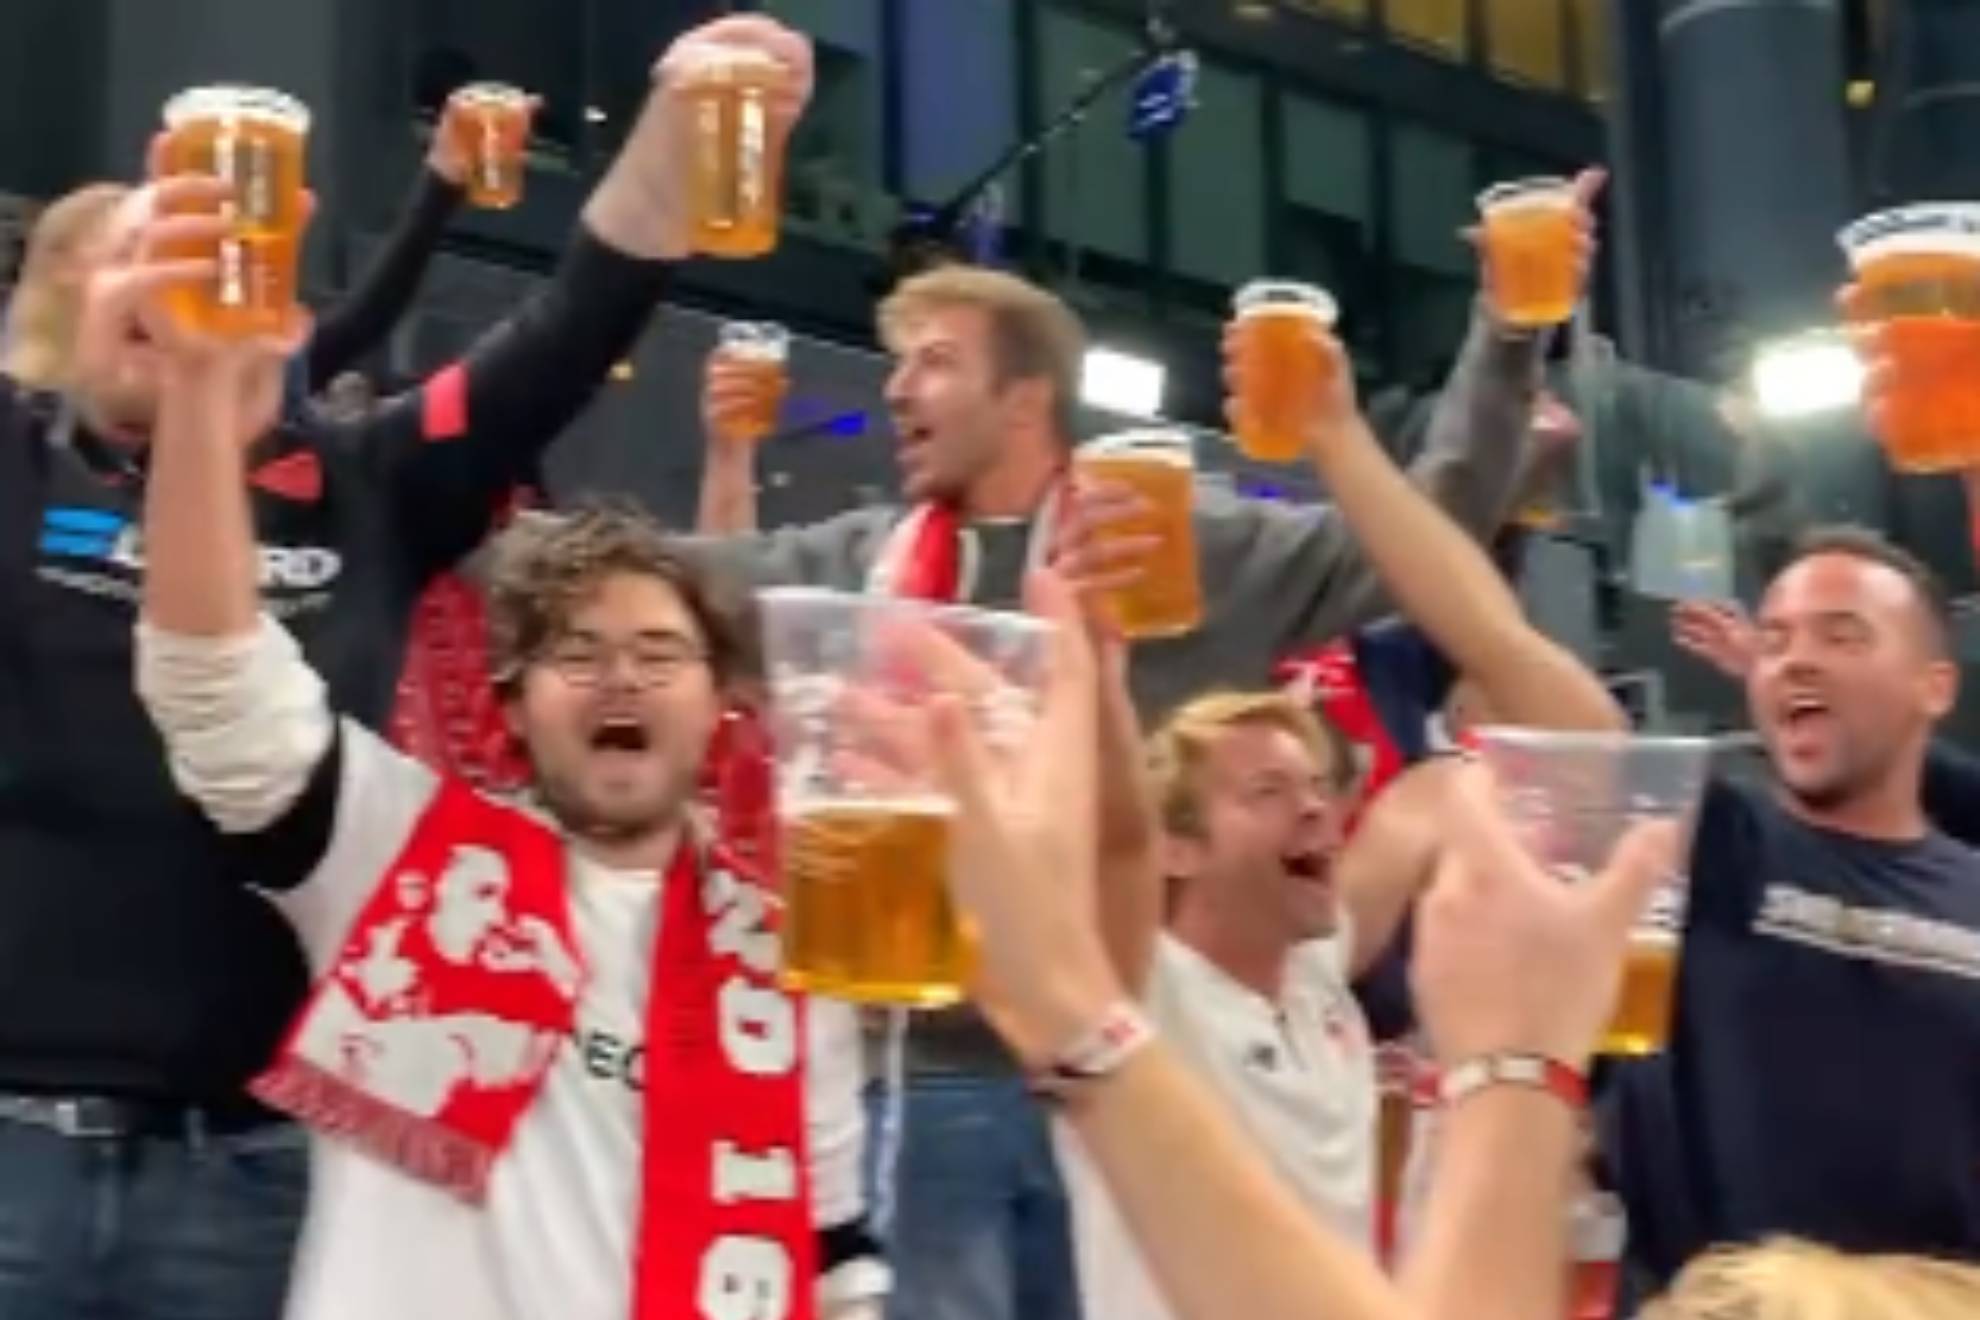 El Copenhague invita a cervezas a los aficionados del Sevilla y el vídeo da la vuelta al mundo: "Salud"